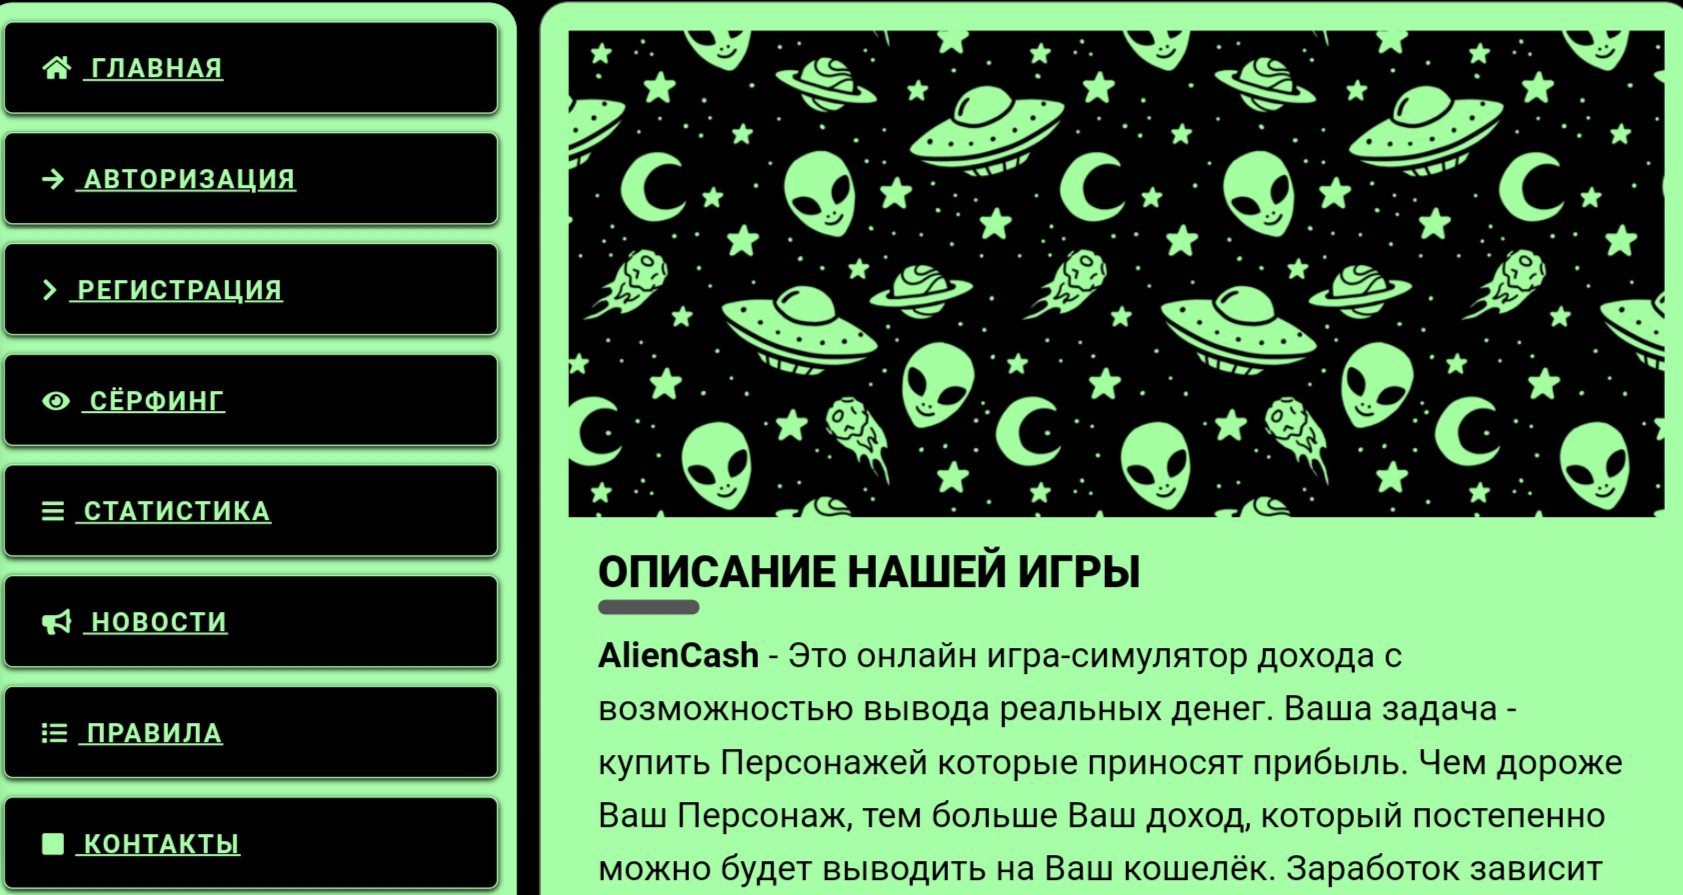 AlienCash онлайн игра